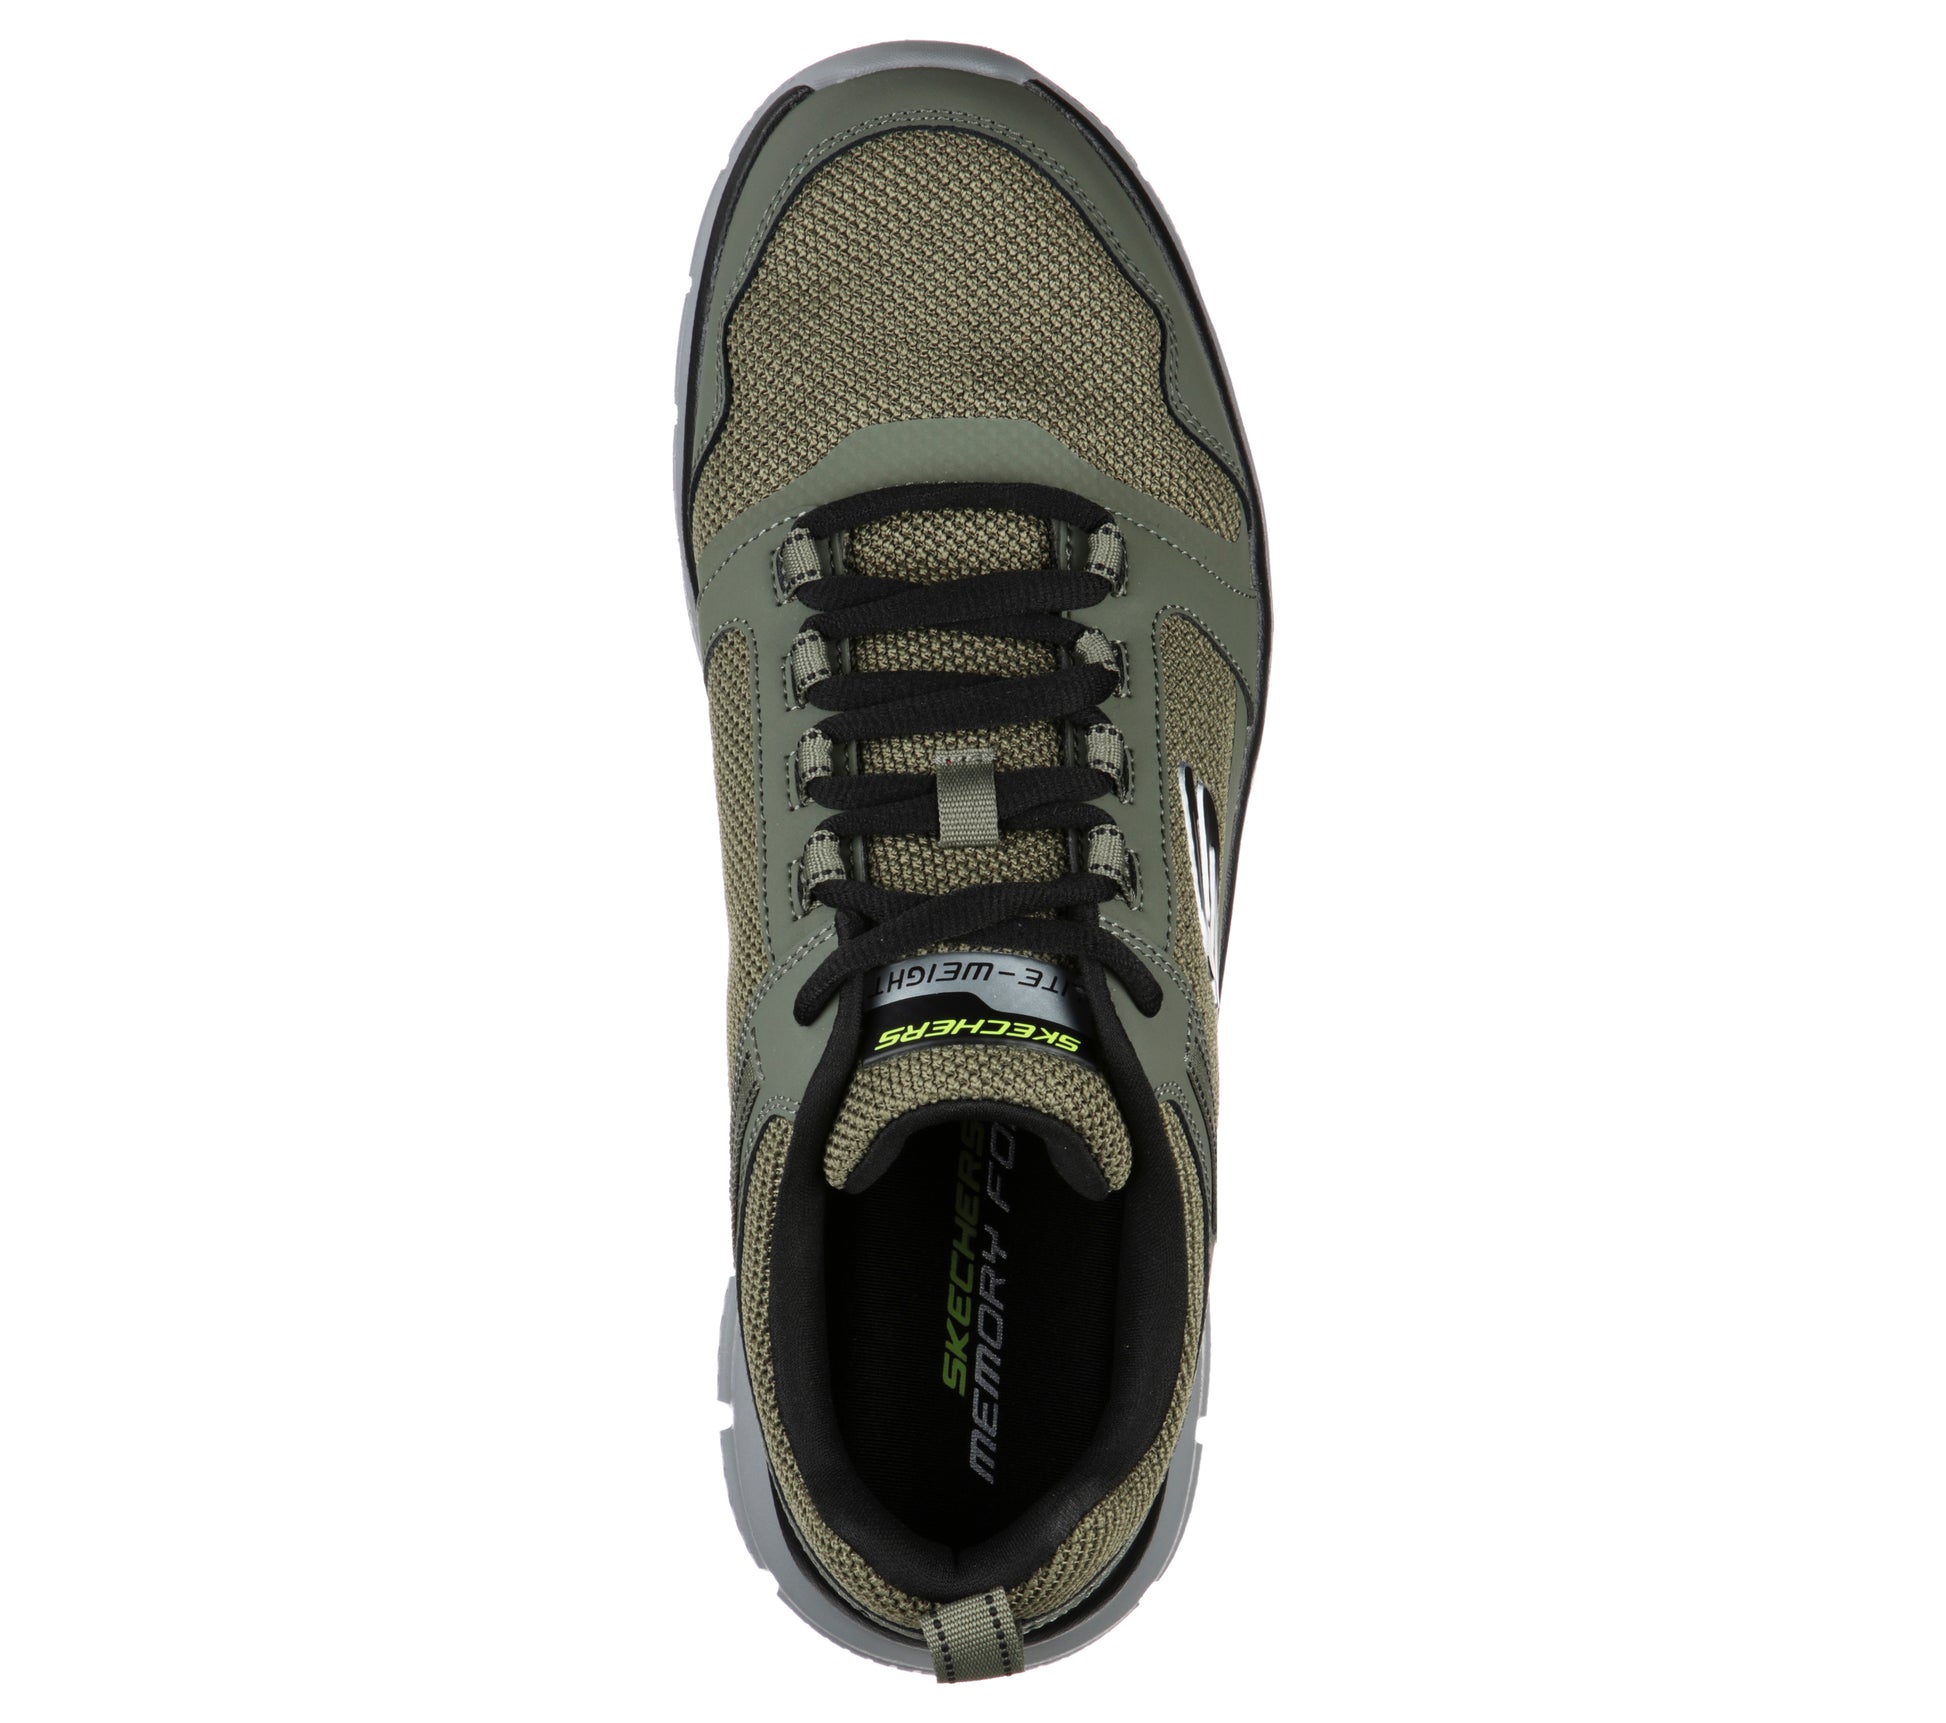 נעלי ספורט לגברים  Track - Knockhill בצבע ירוק זית